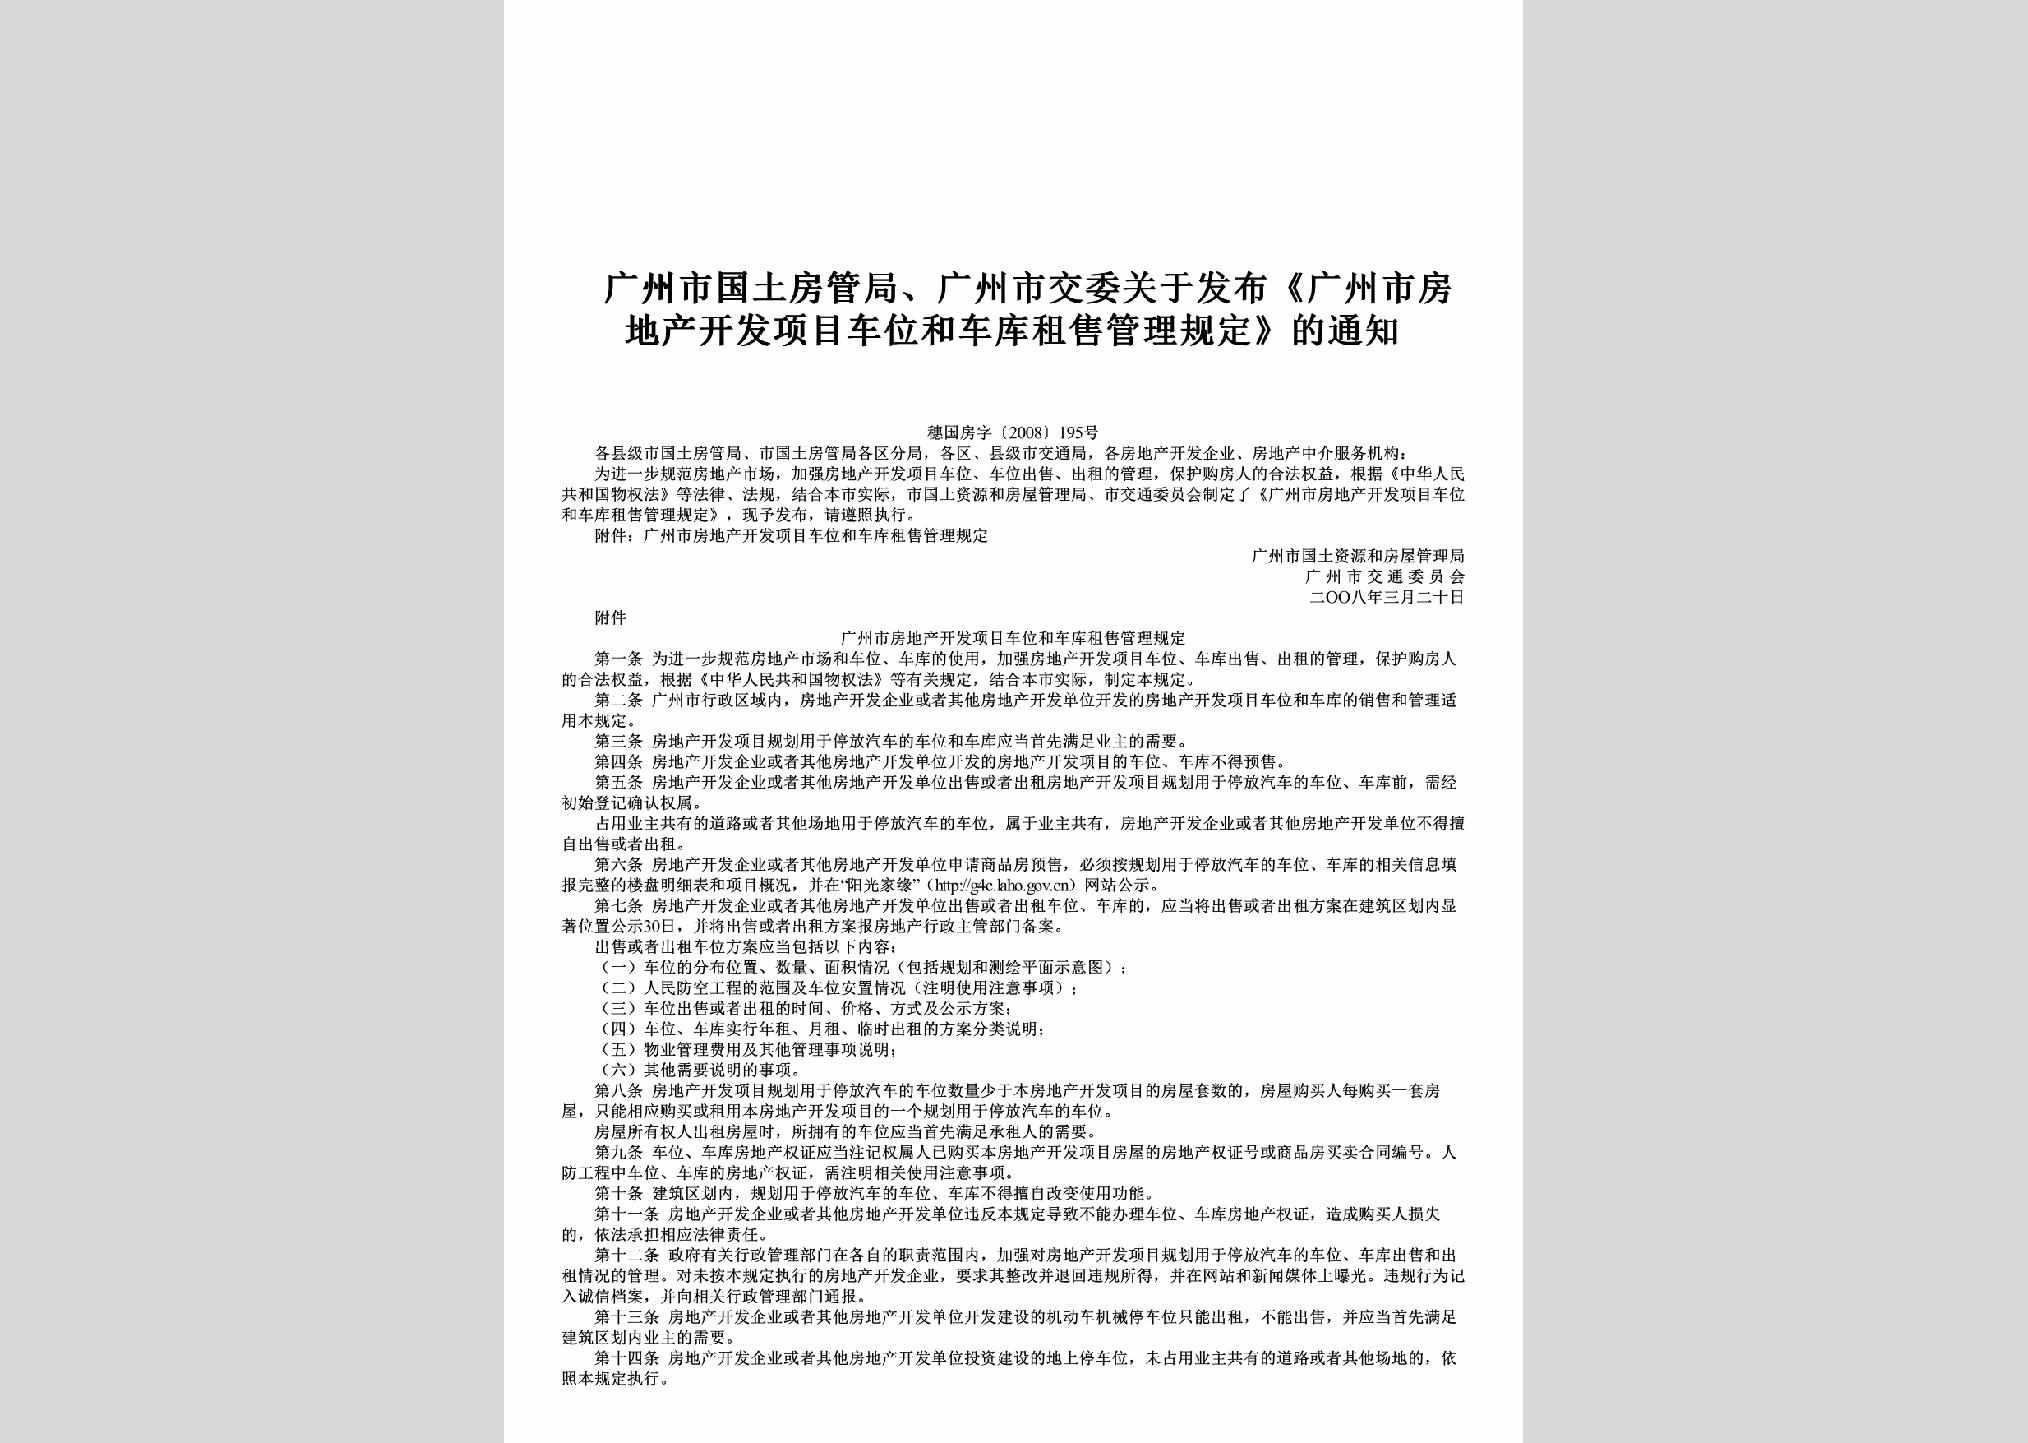 穗国房字[2008]195号：关于发布《广州市房地产开发项目车位和车库租售管理规定》的通知